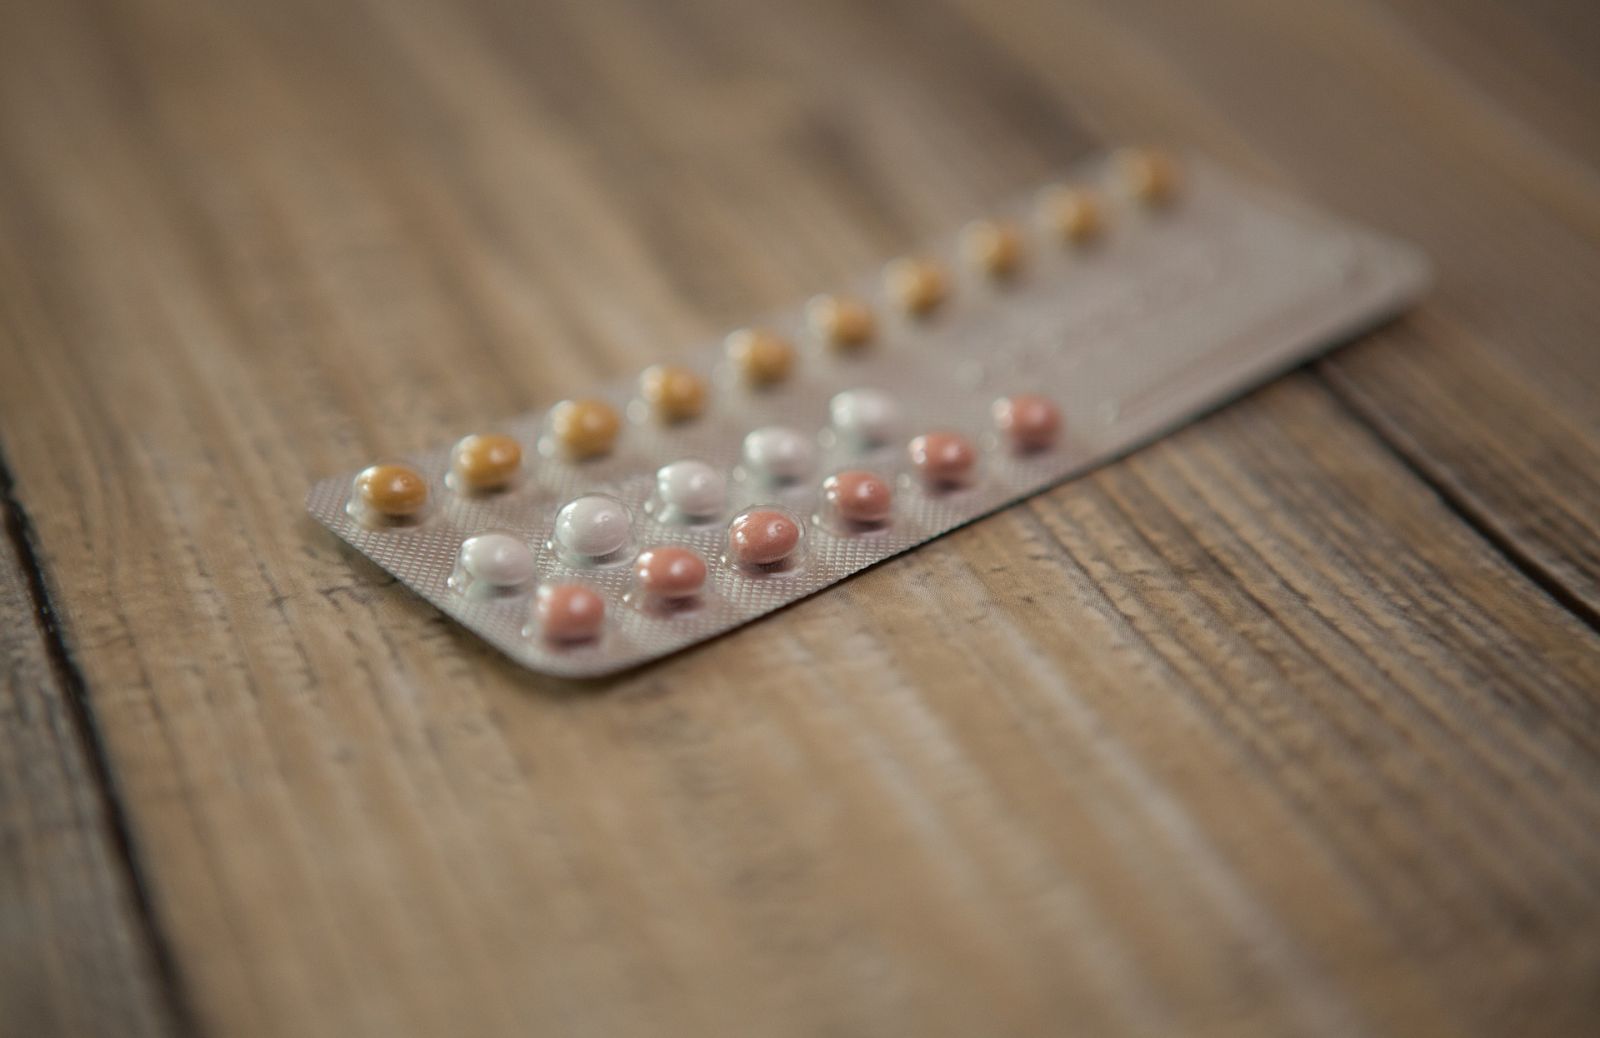 Pillole anticoncezionali: le possibili controindicazioni